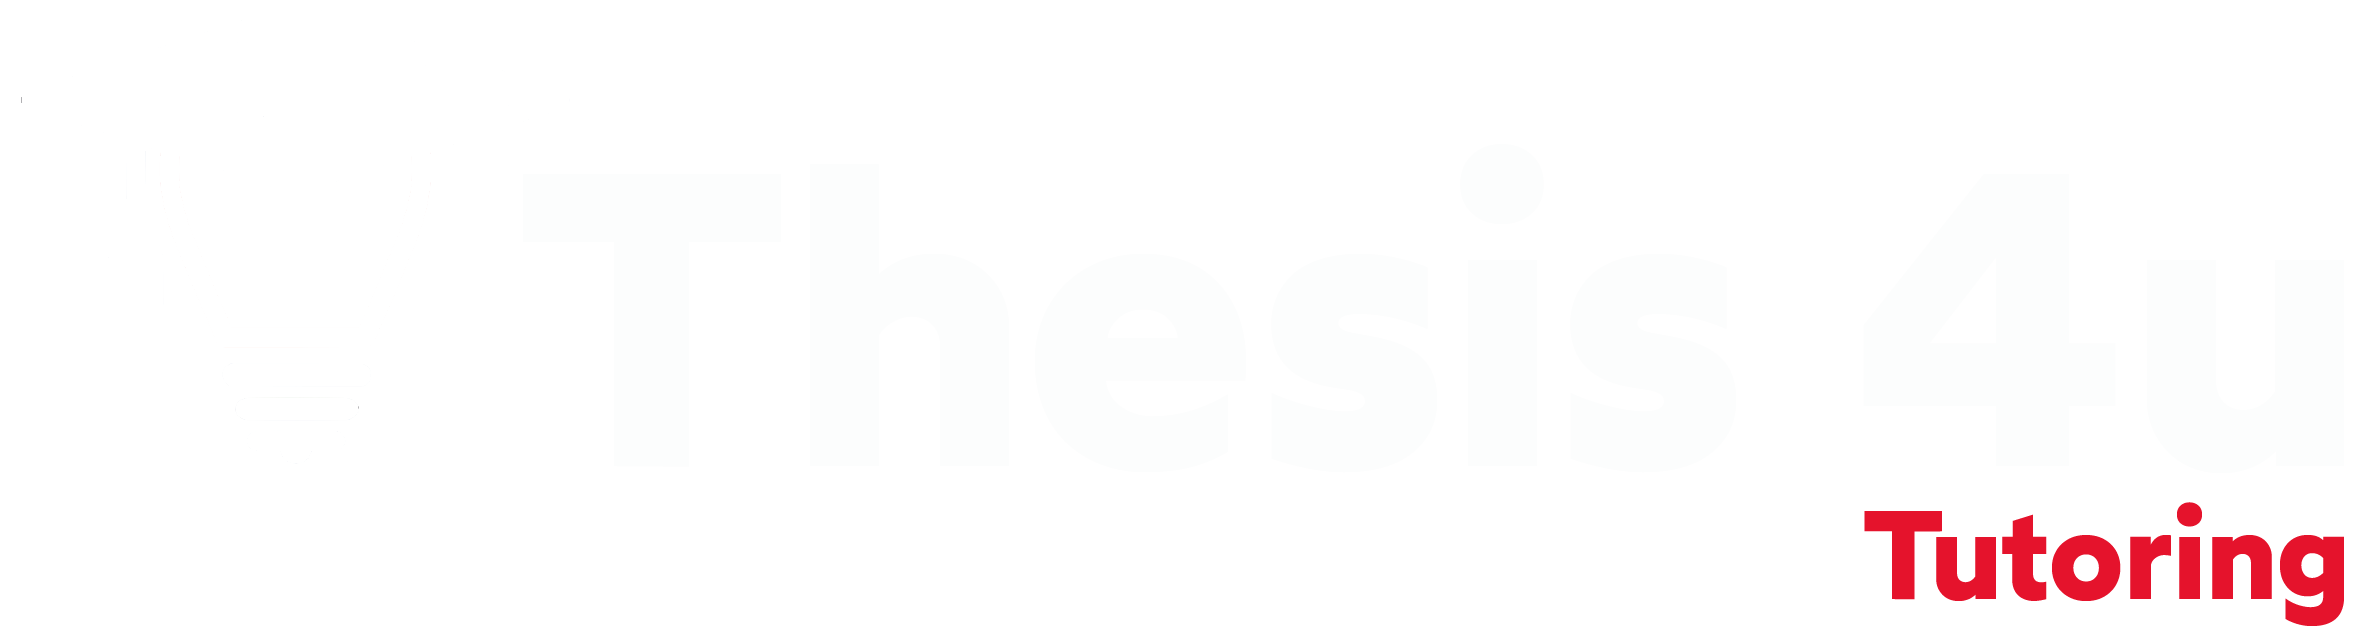 Thesis 4u Tutoring logo